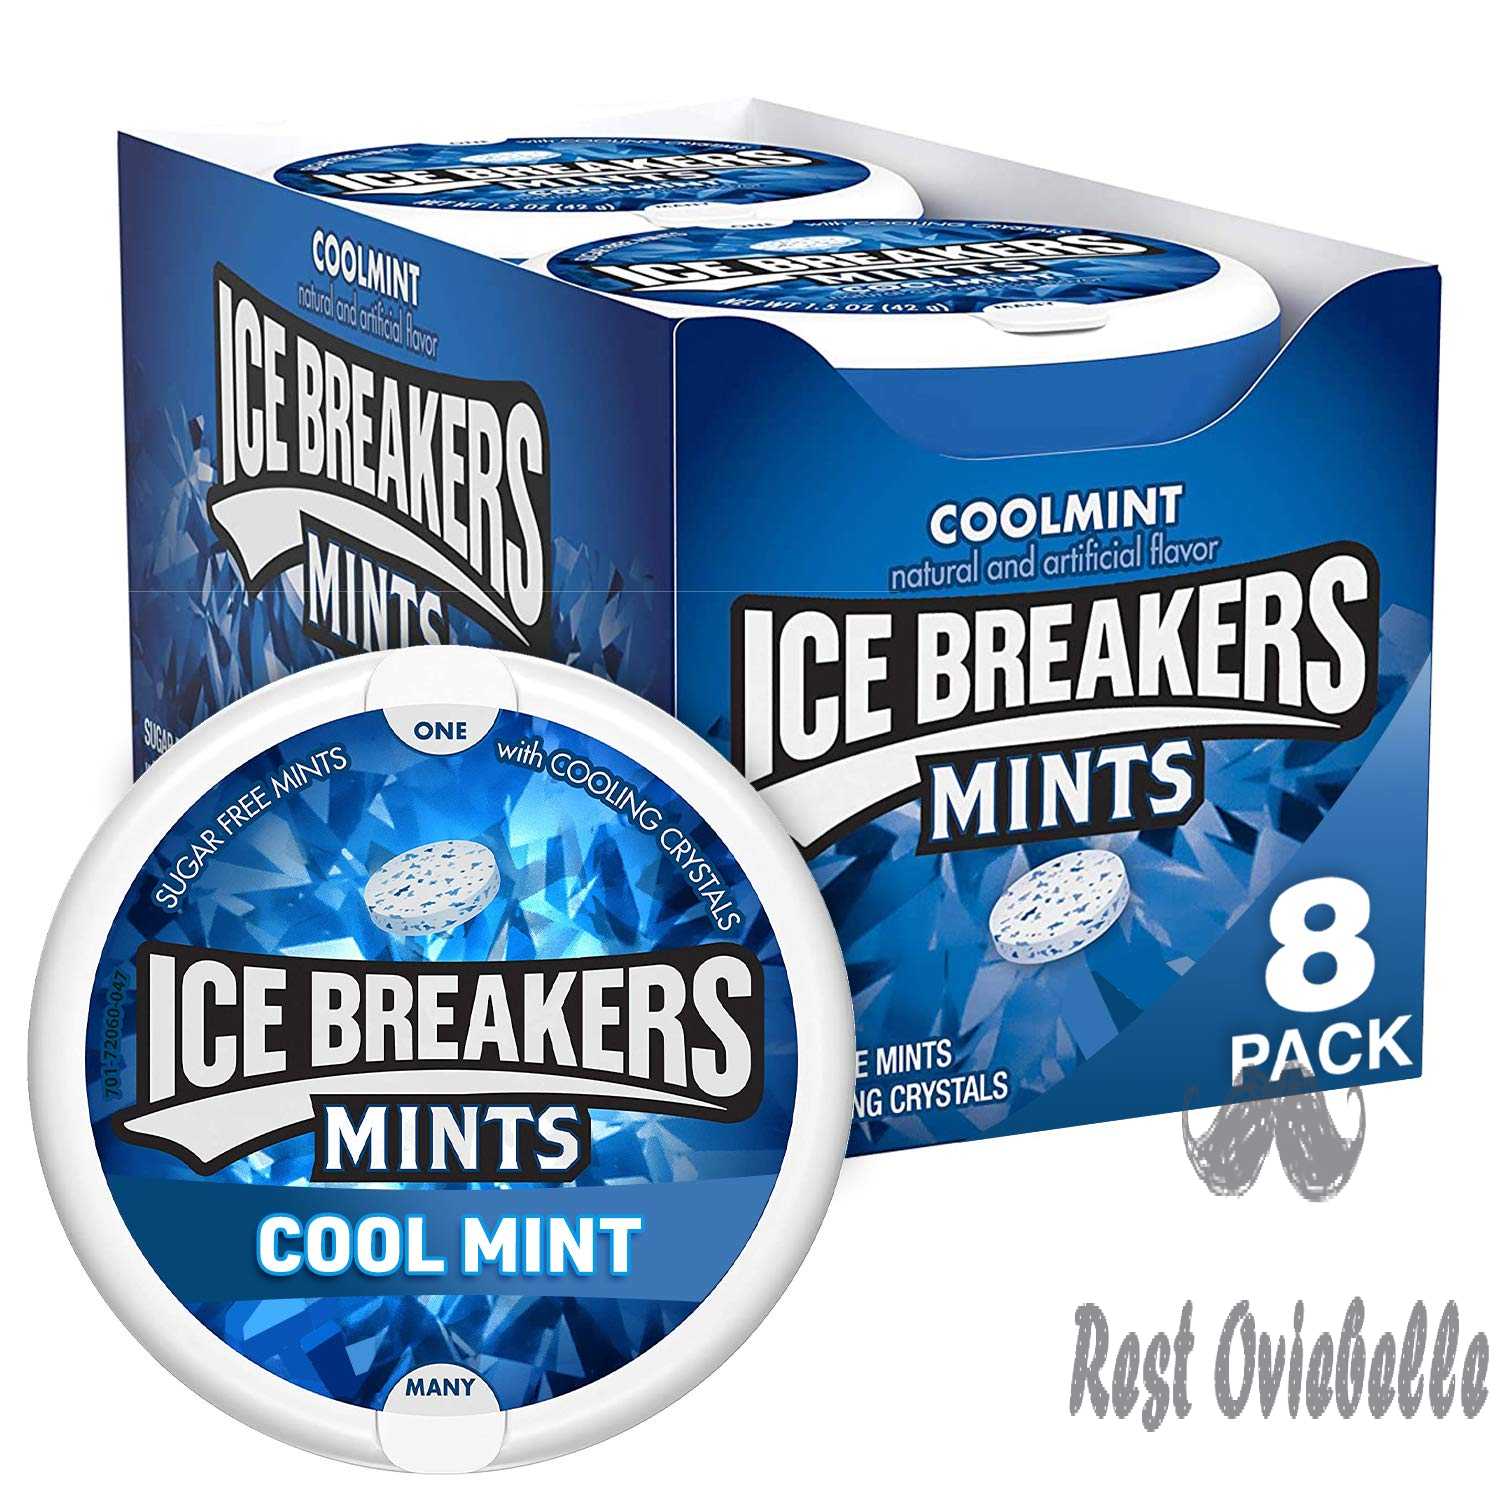 ICE BREAKERS Coolmint Sugar Free